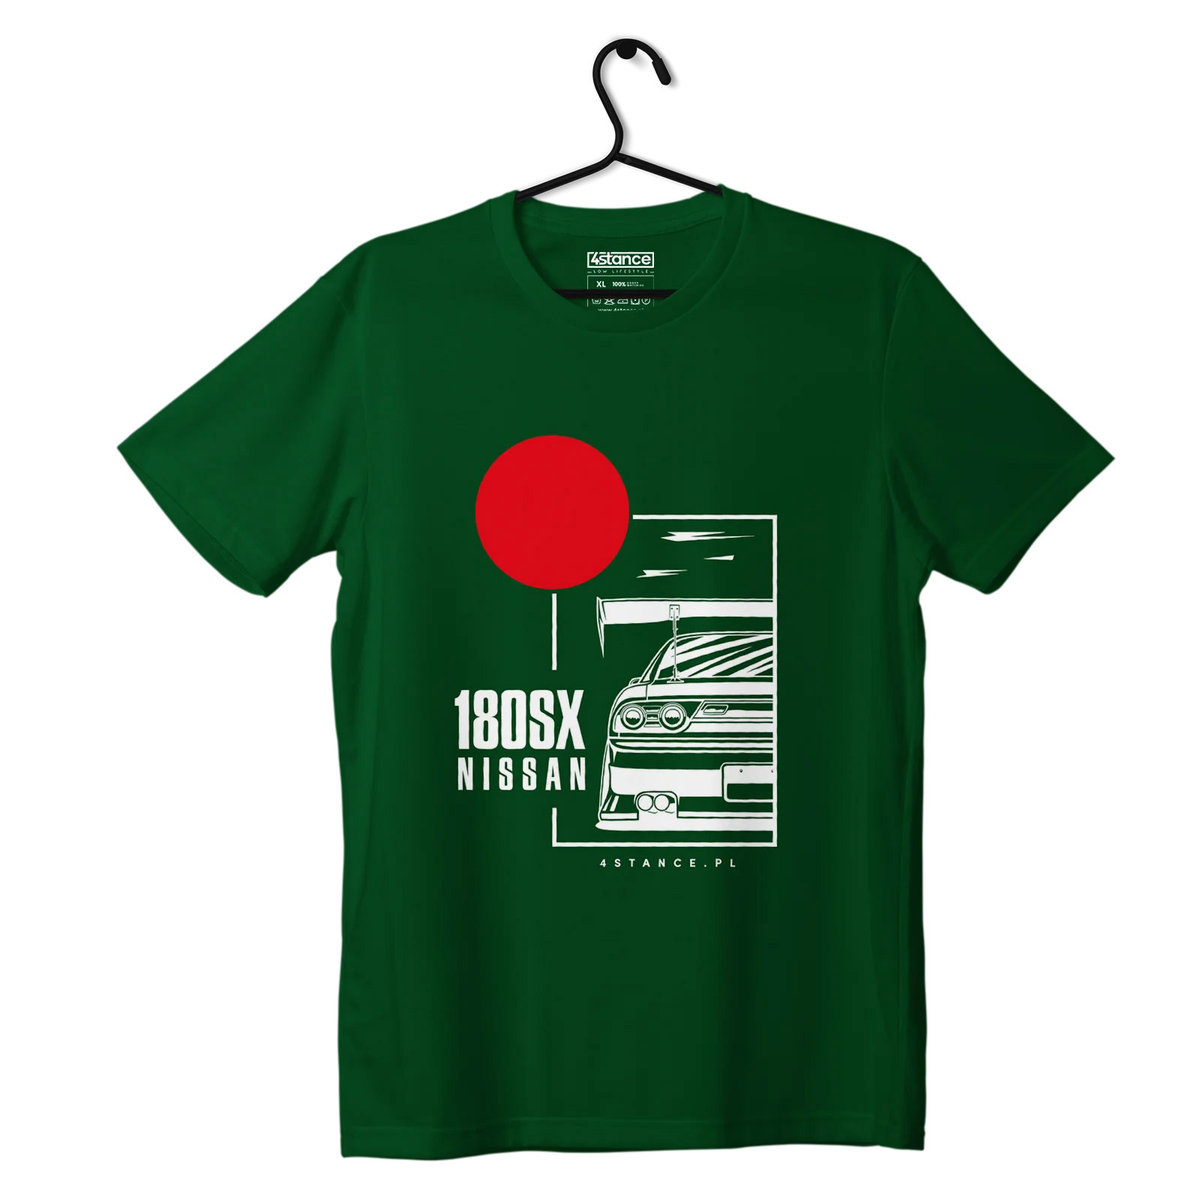 Zdjęcia - Odzież motocyklowa Nissan T-shirt koszulka  180SX zielona-XXL 